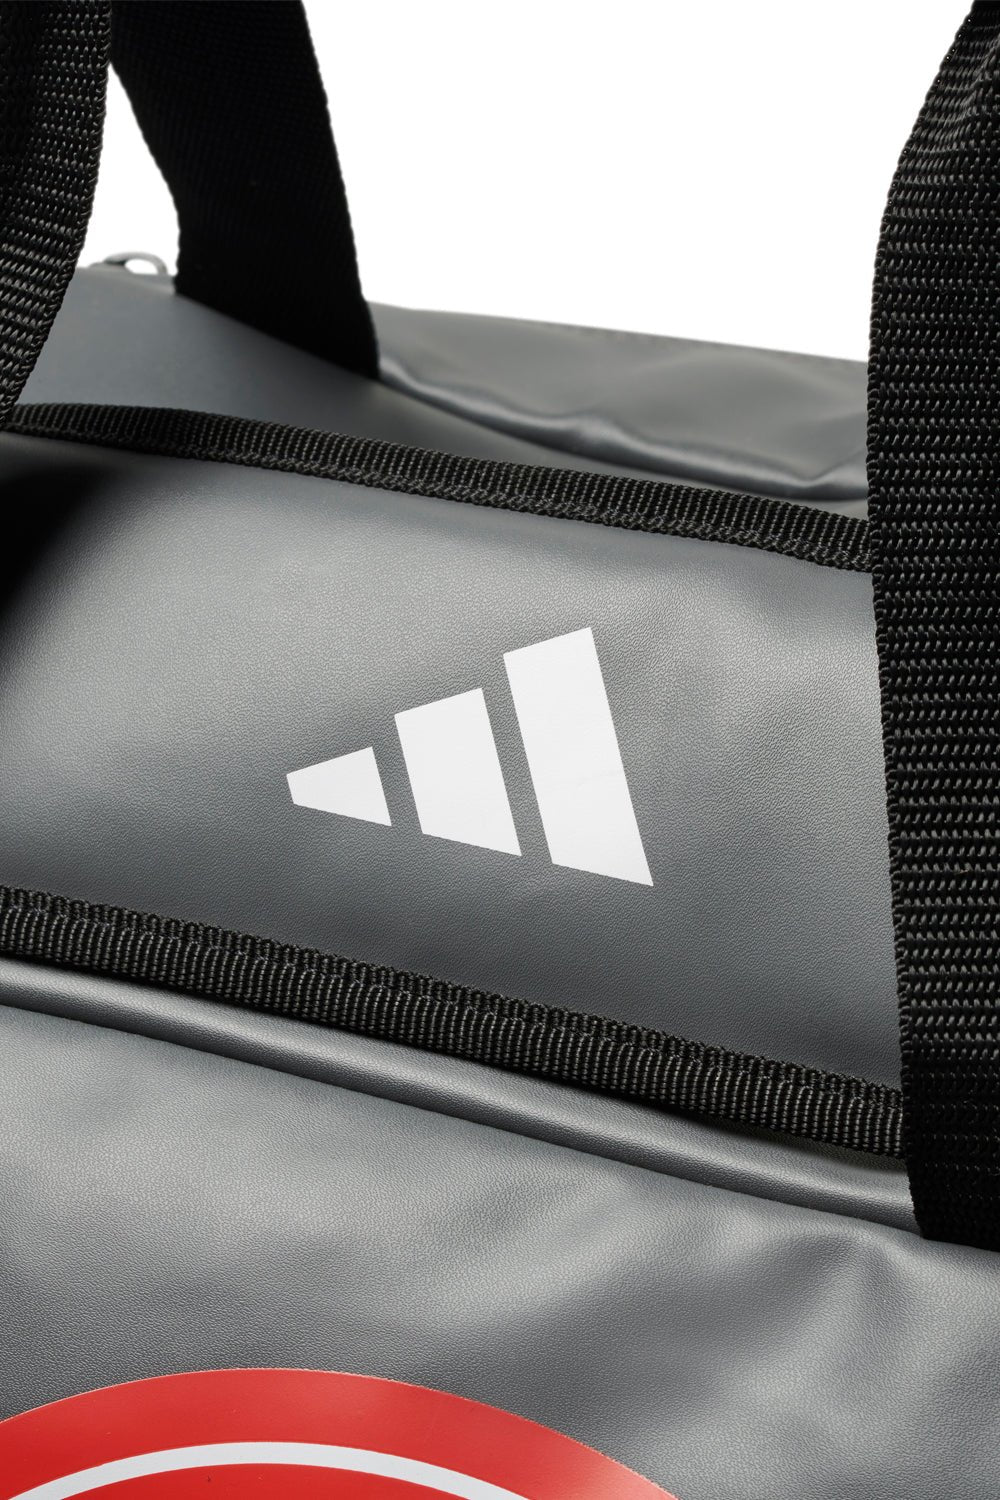 Comp Team Duffel Bag by Adidas - Grey